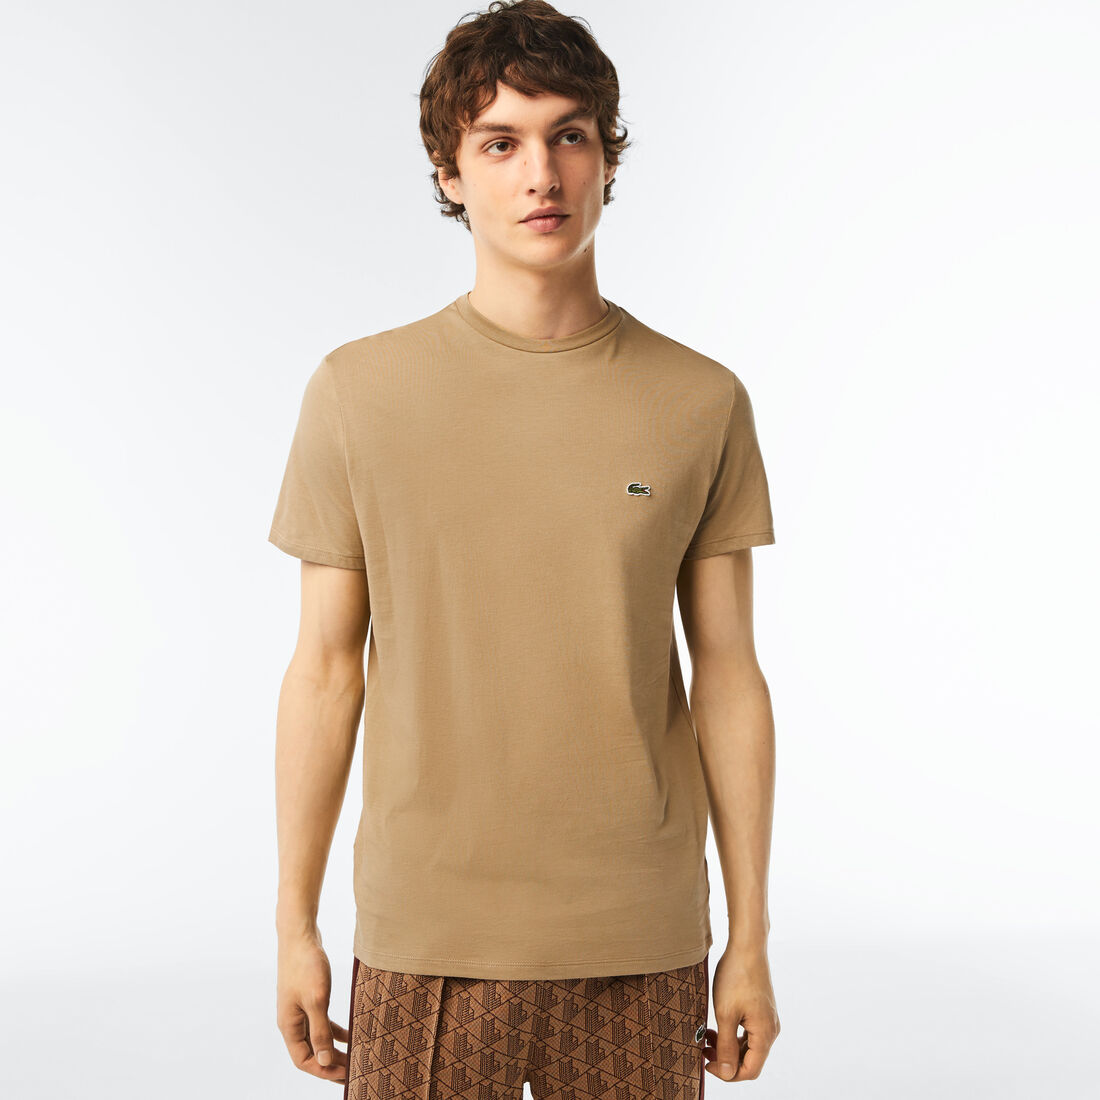 Lacoste - Pima Cotton Jersey T-Shirt, Crew Neck - Beige